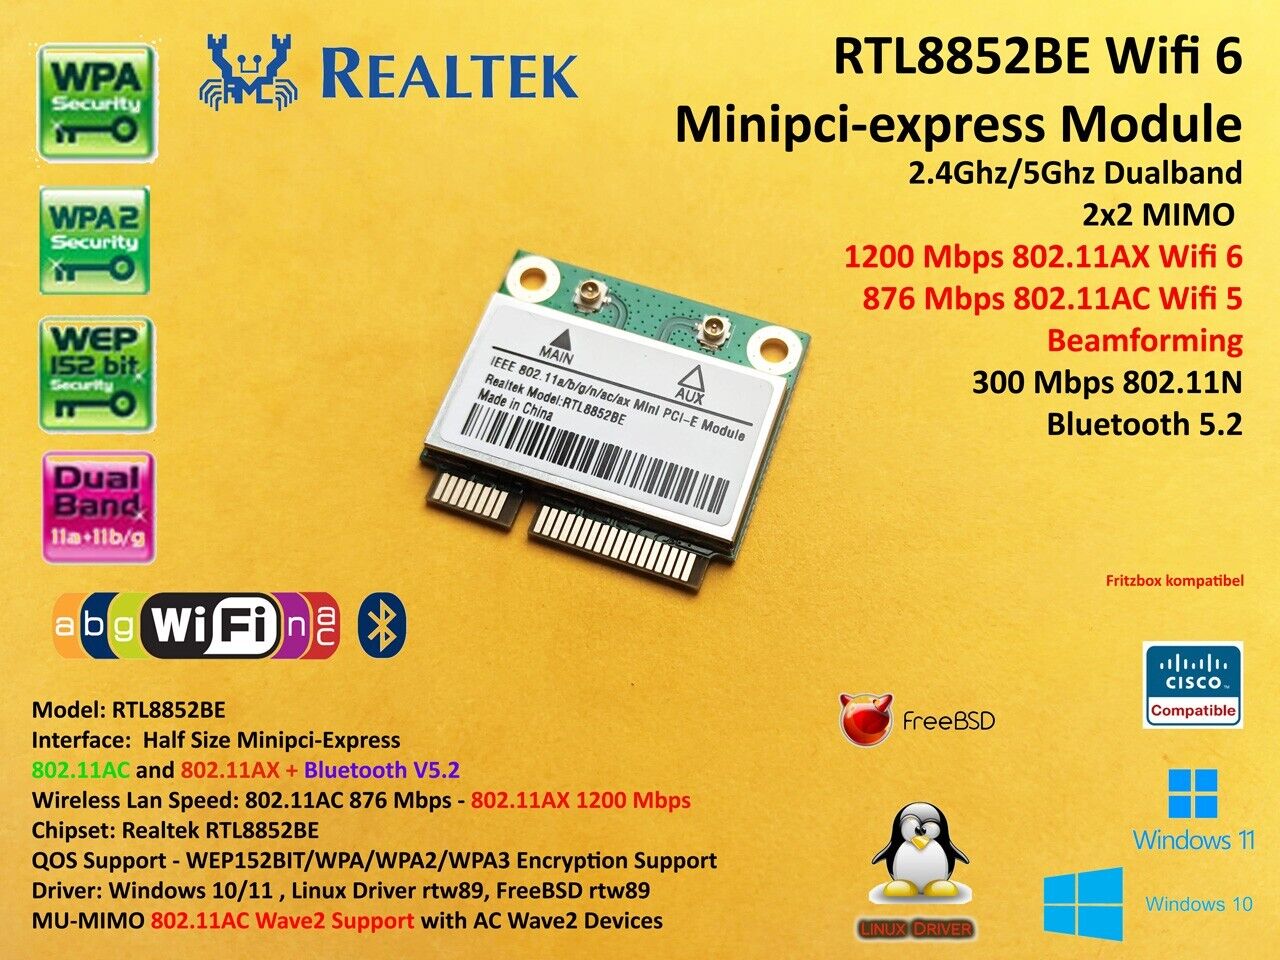 Minipci-express 802.11AC/AX Wi-Fi + Bluetooth 5.2 RTL8852BE AX1800 6MP